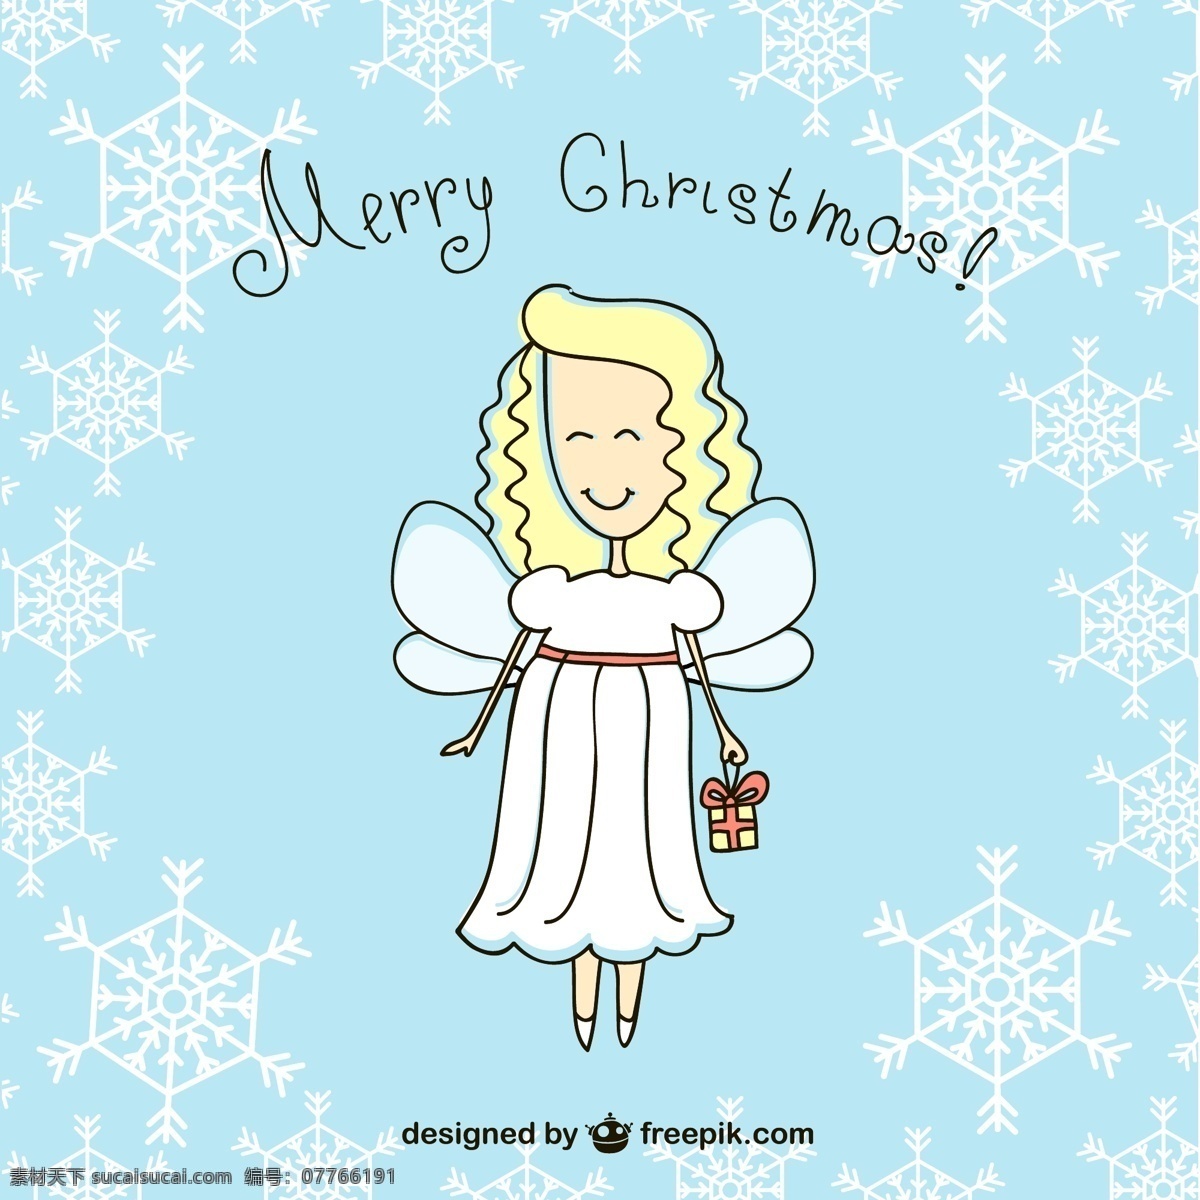 圣诞快乐 天使 卡通 圣诞节 雪花 祝福 水平 圣诞天使 圣诞祝福 白色